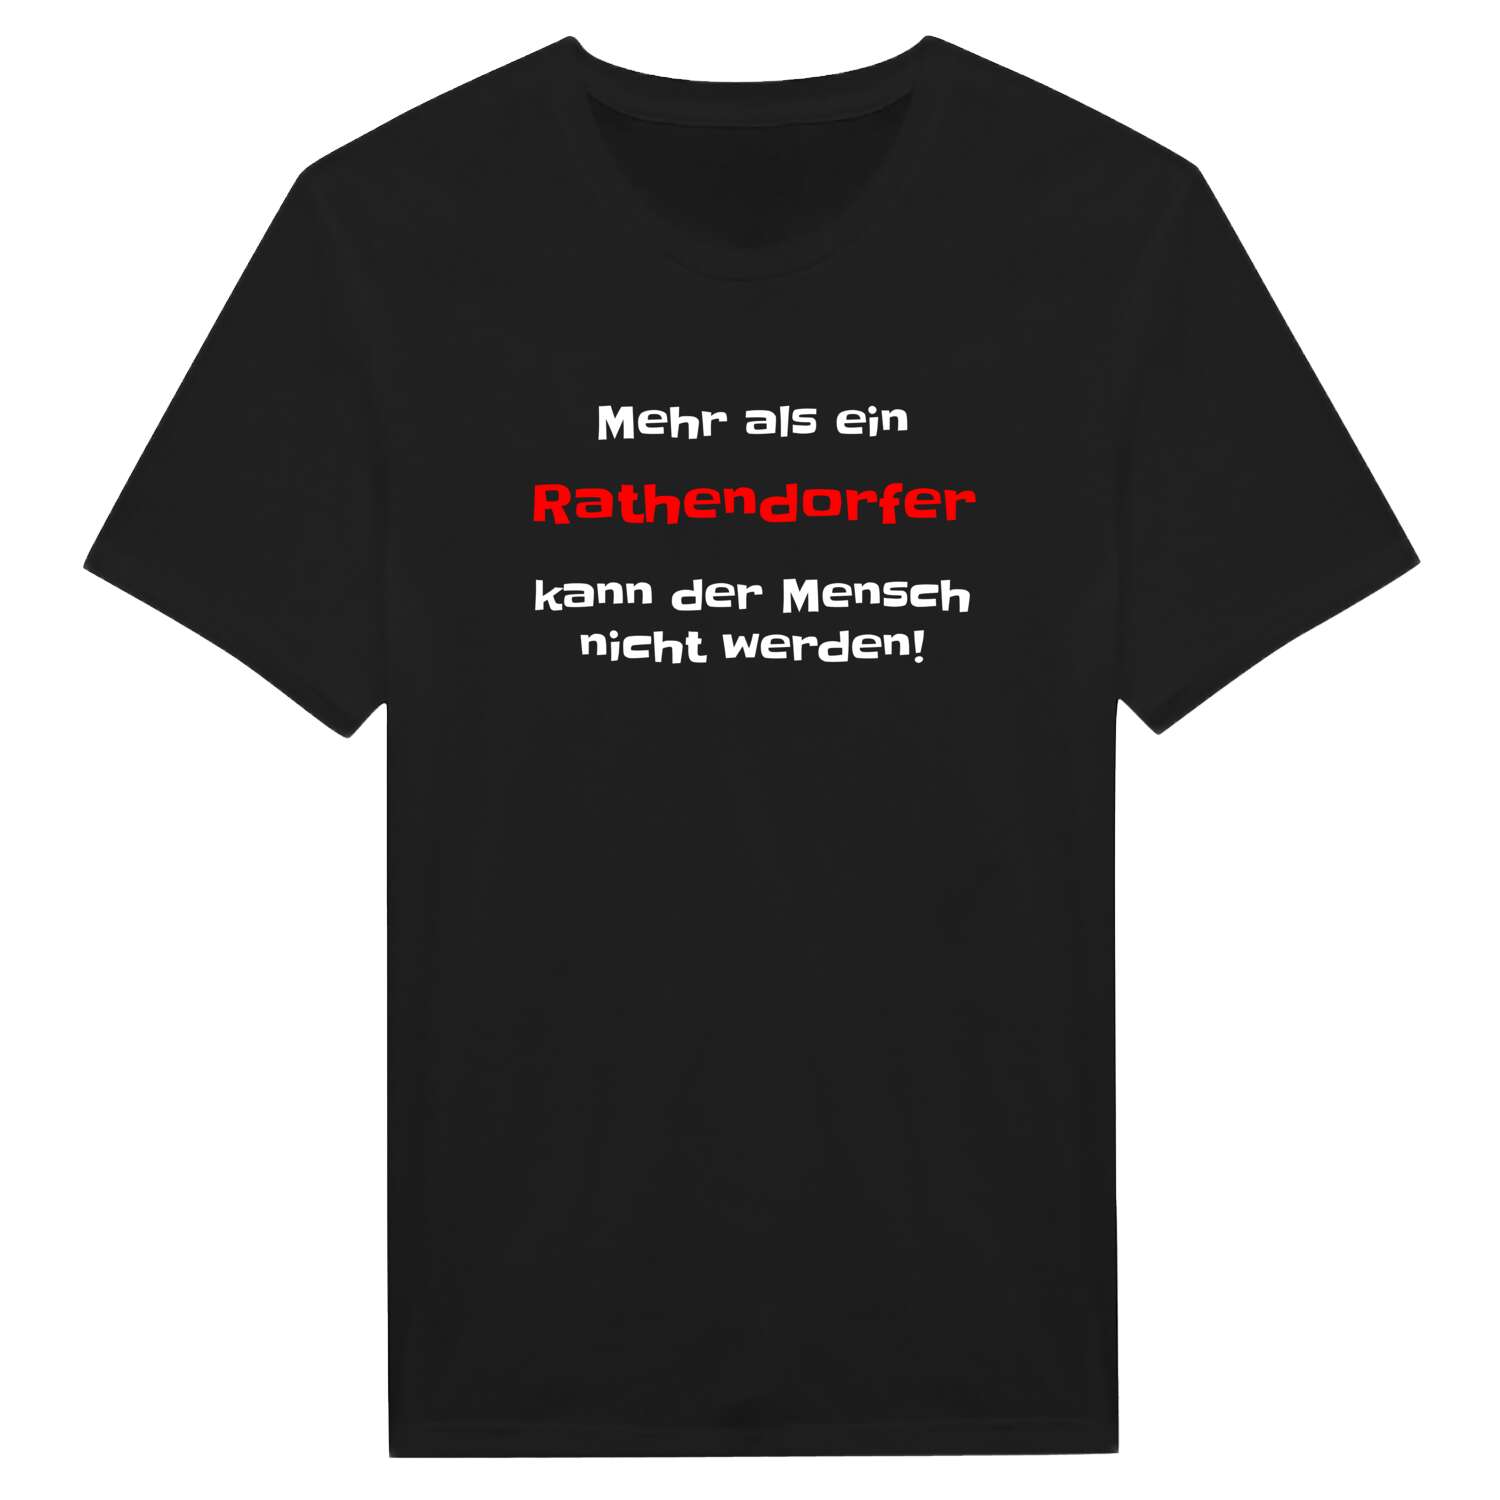 Rathendorf T-Shirt »Mehr als ein«